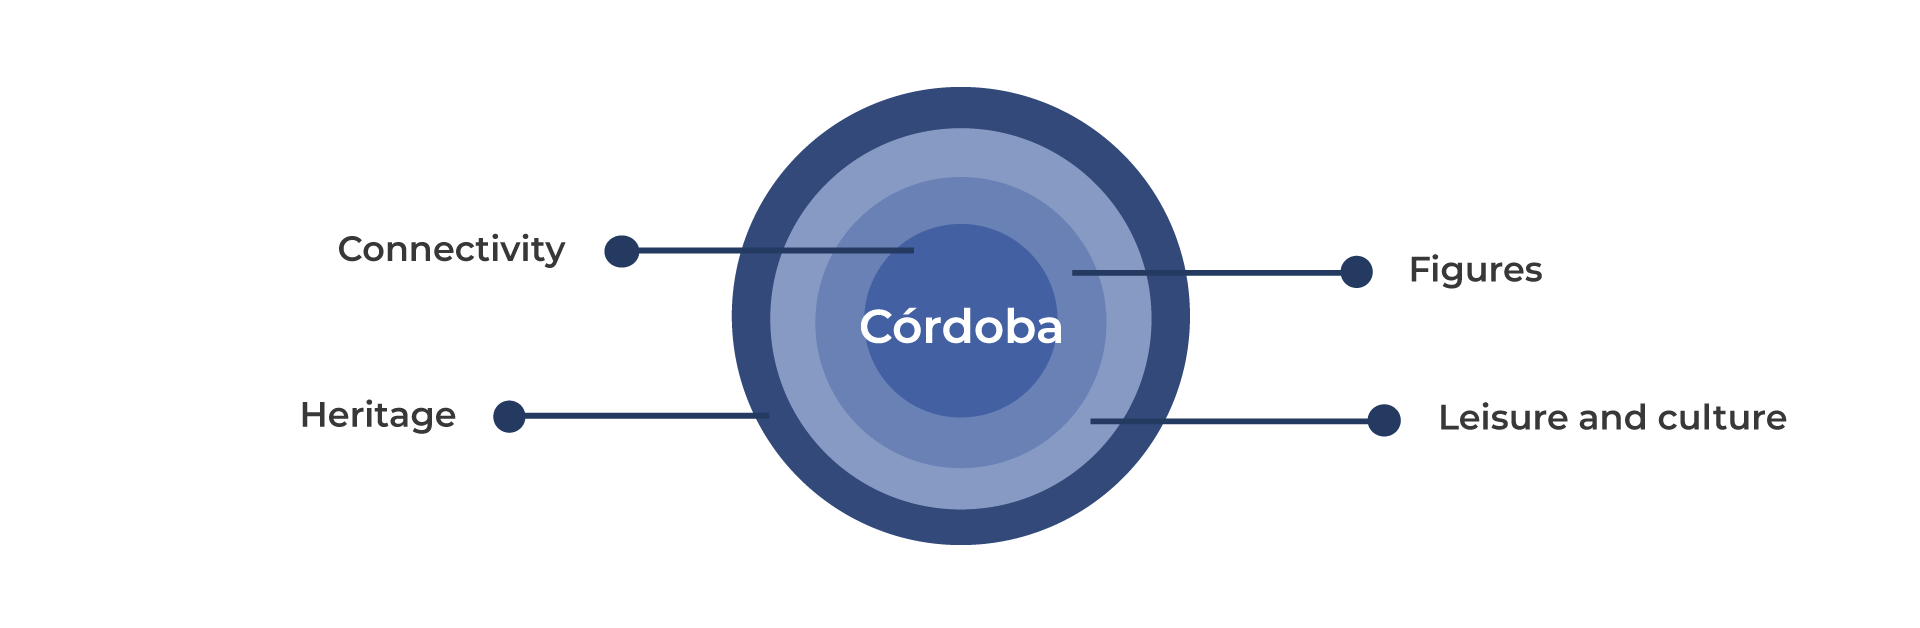 Córdoba en datos